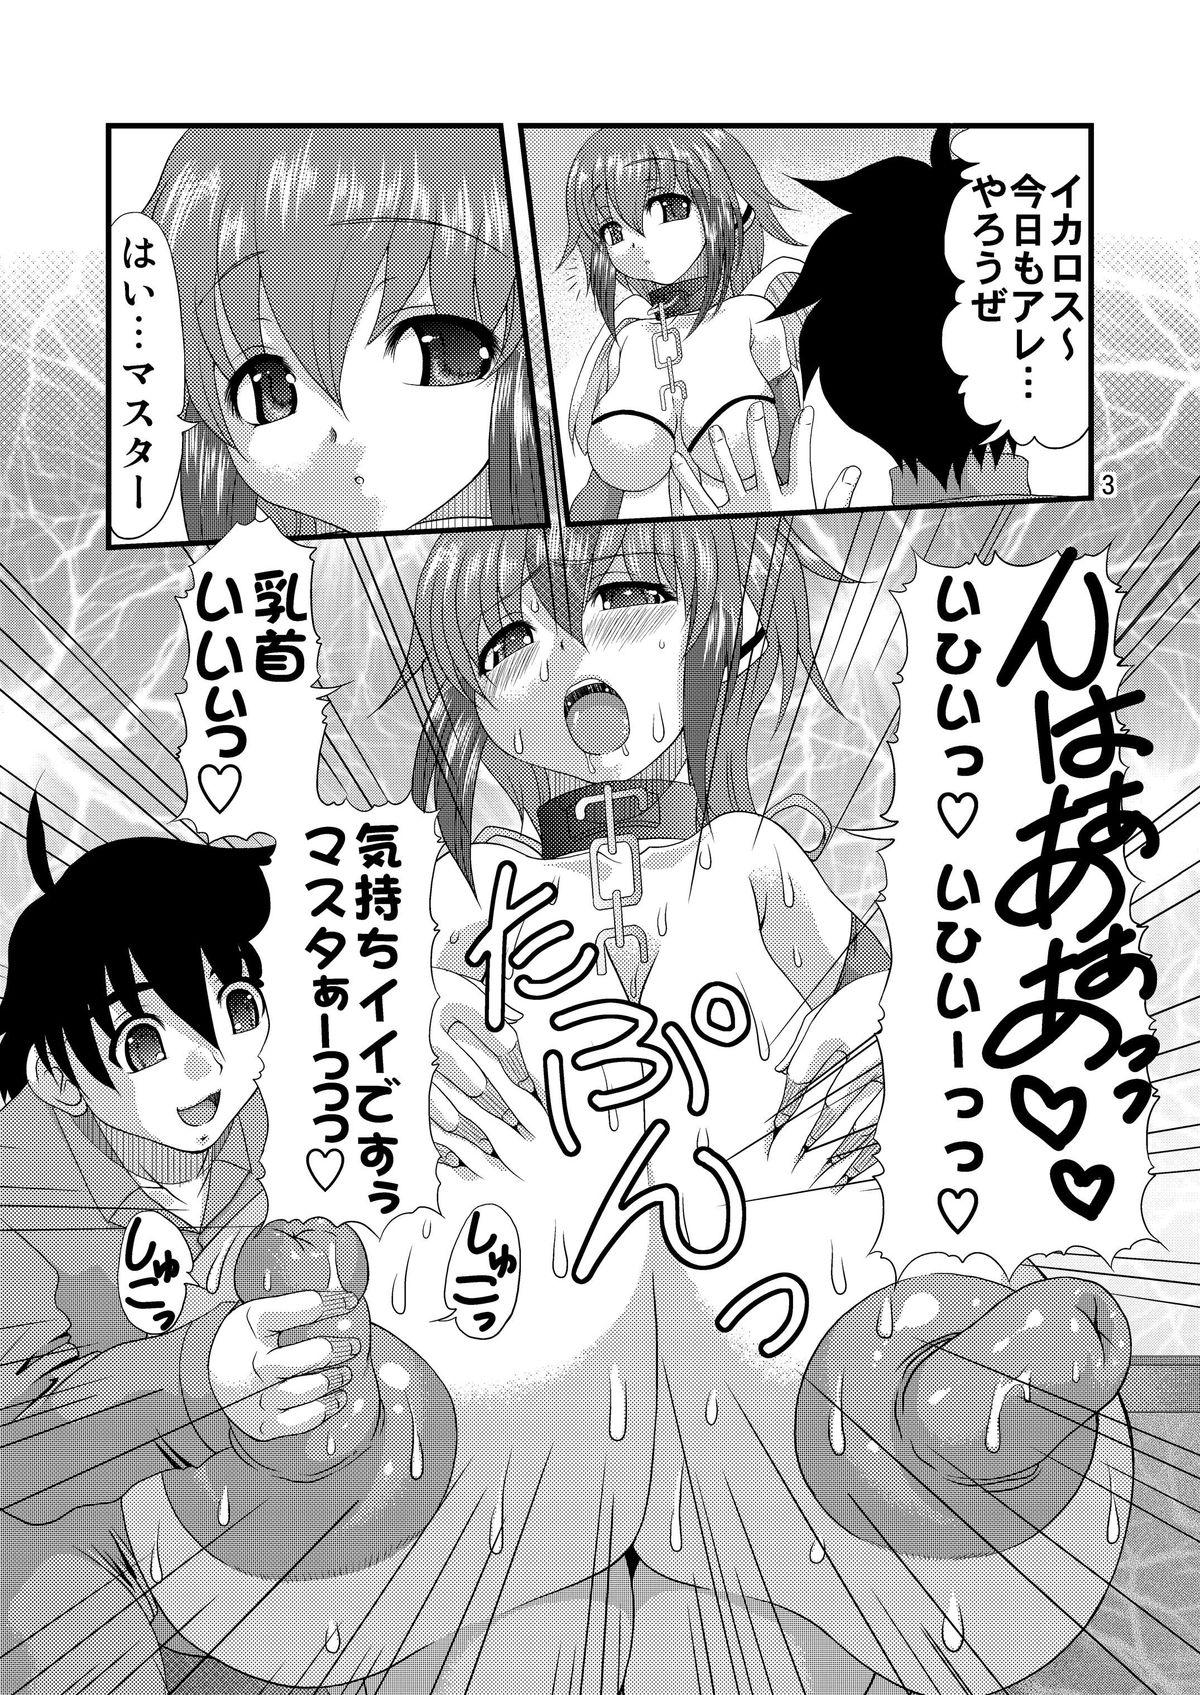 Milk Chichi to Shiri to no Semegiai - Sora no otoshimono Wet - Page 2